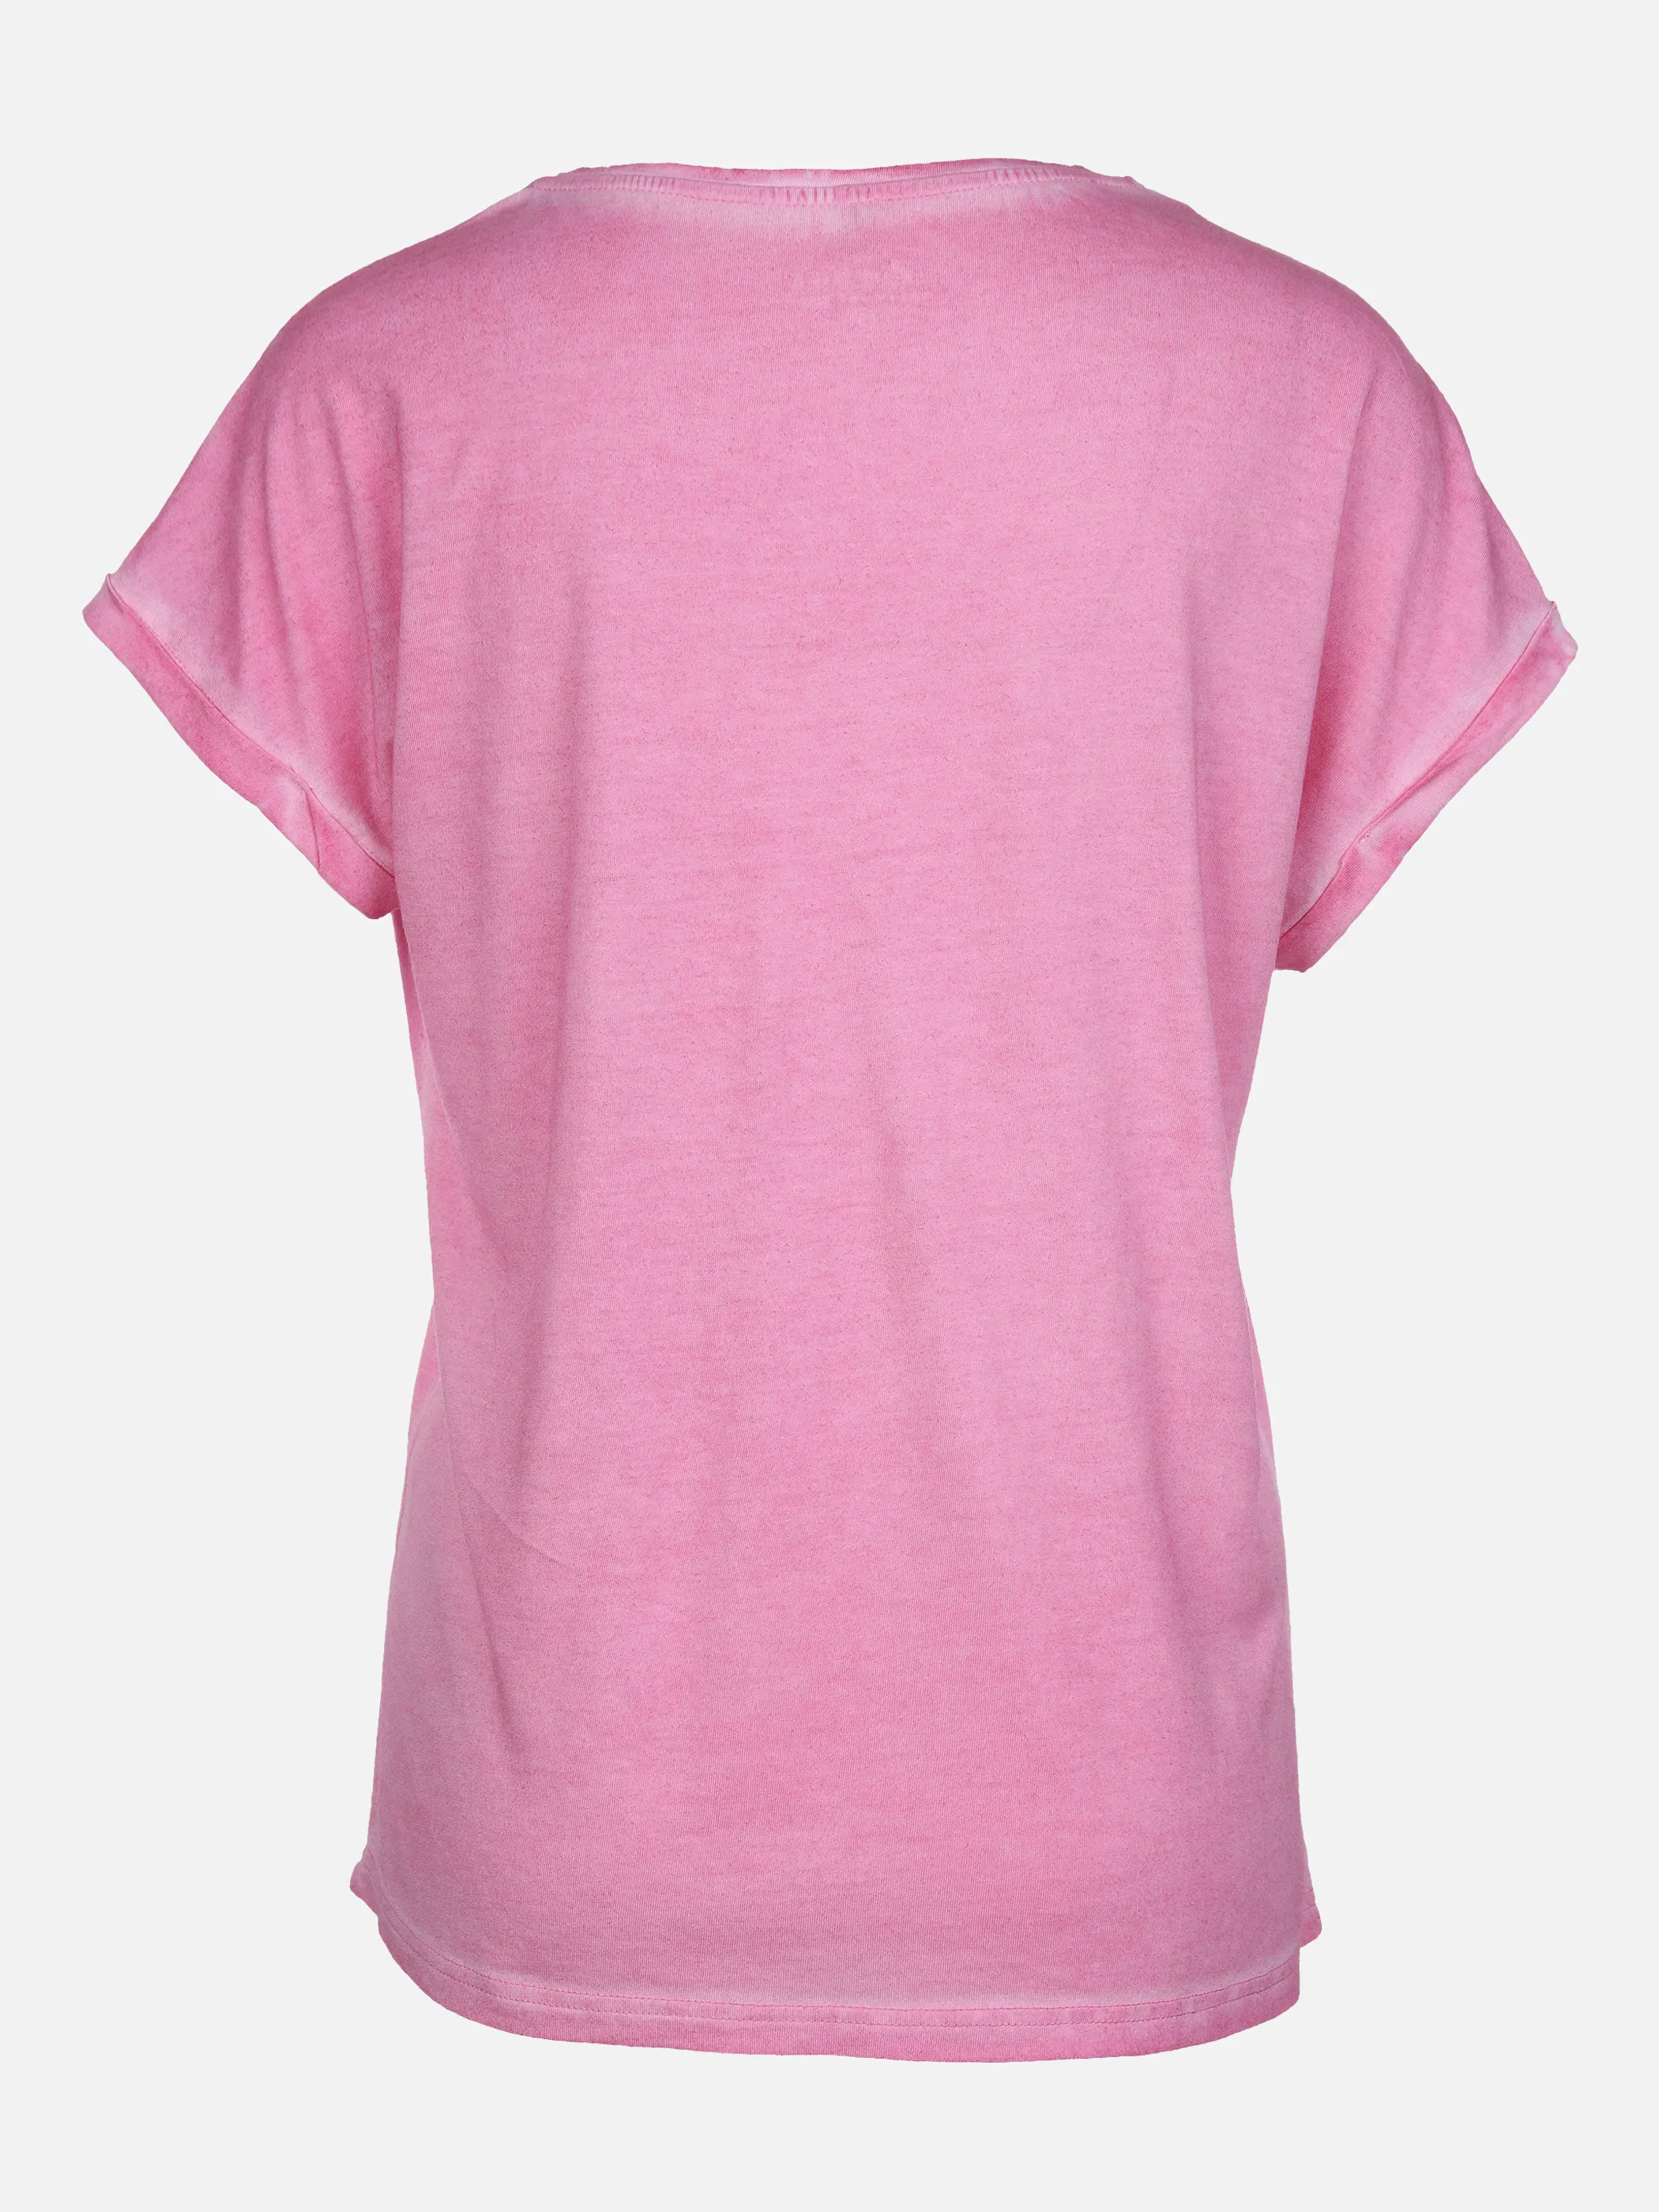 Lisa Tossa Da-T-Shirt m. Frontprint Pink 864662 PINK 2